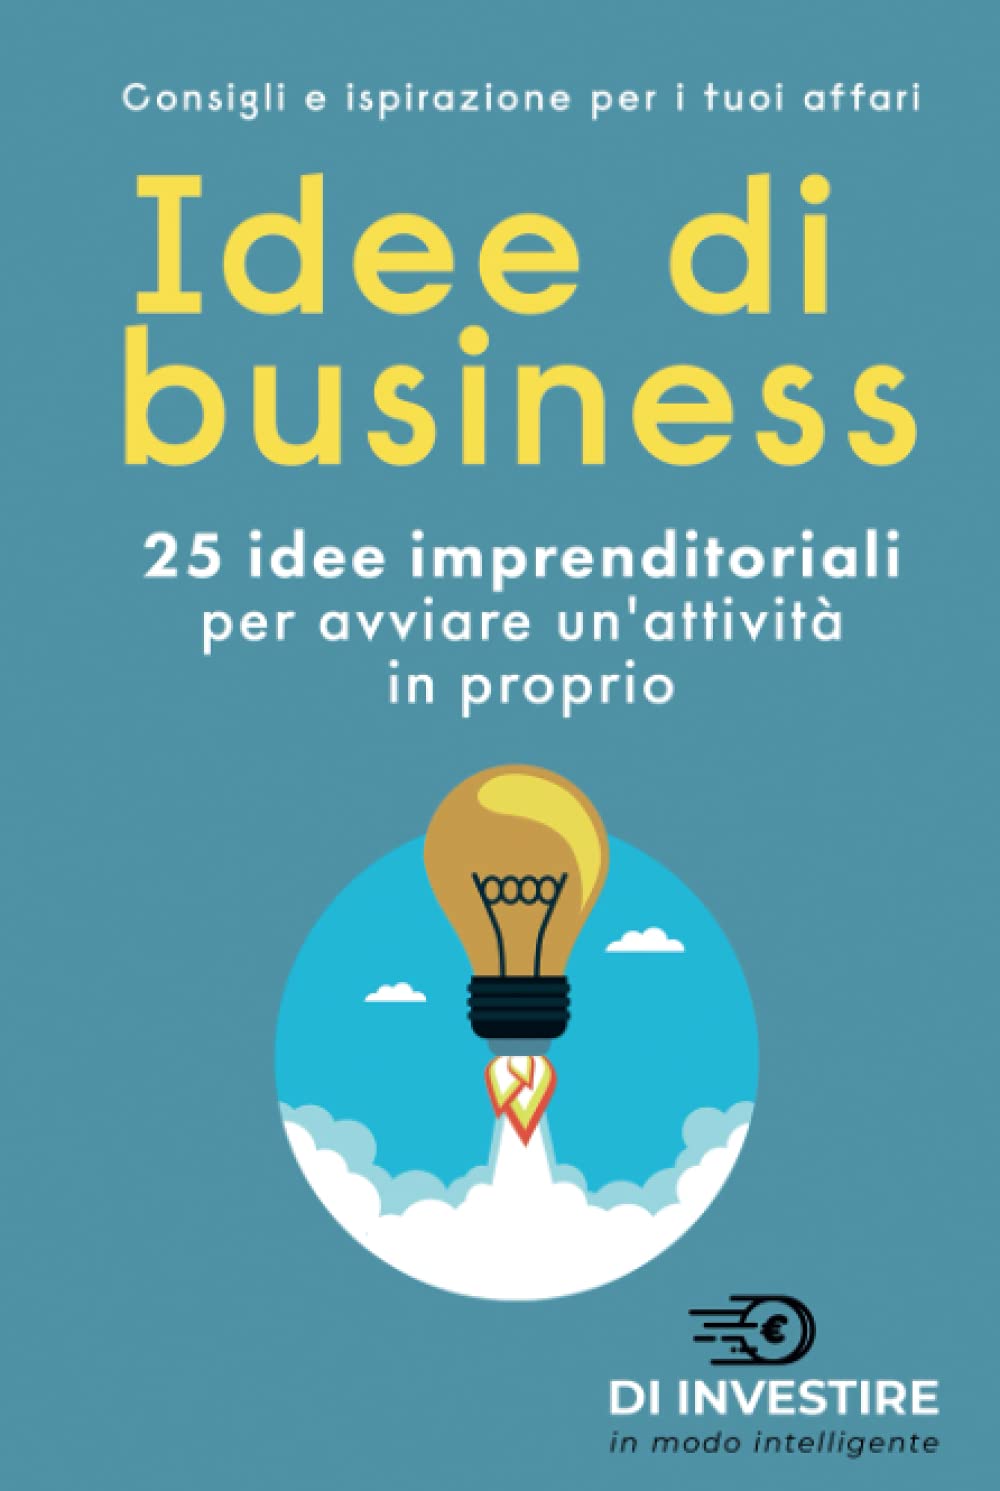 giornata mondiale dell'imprenditore - idee di business